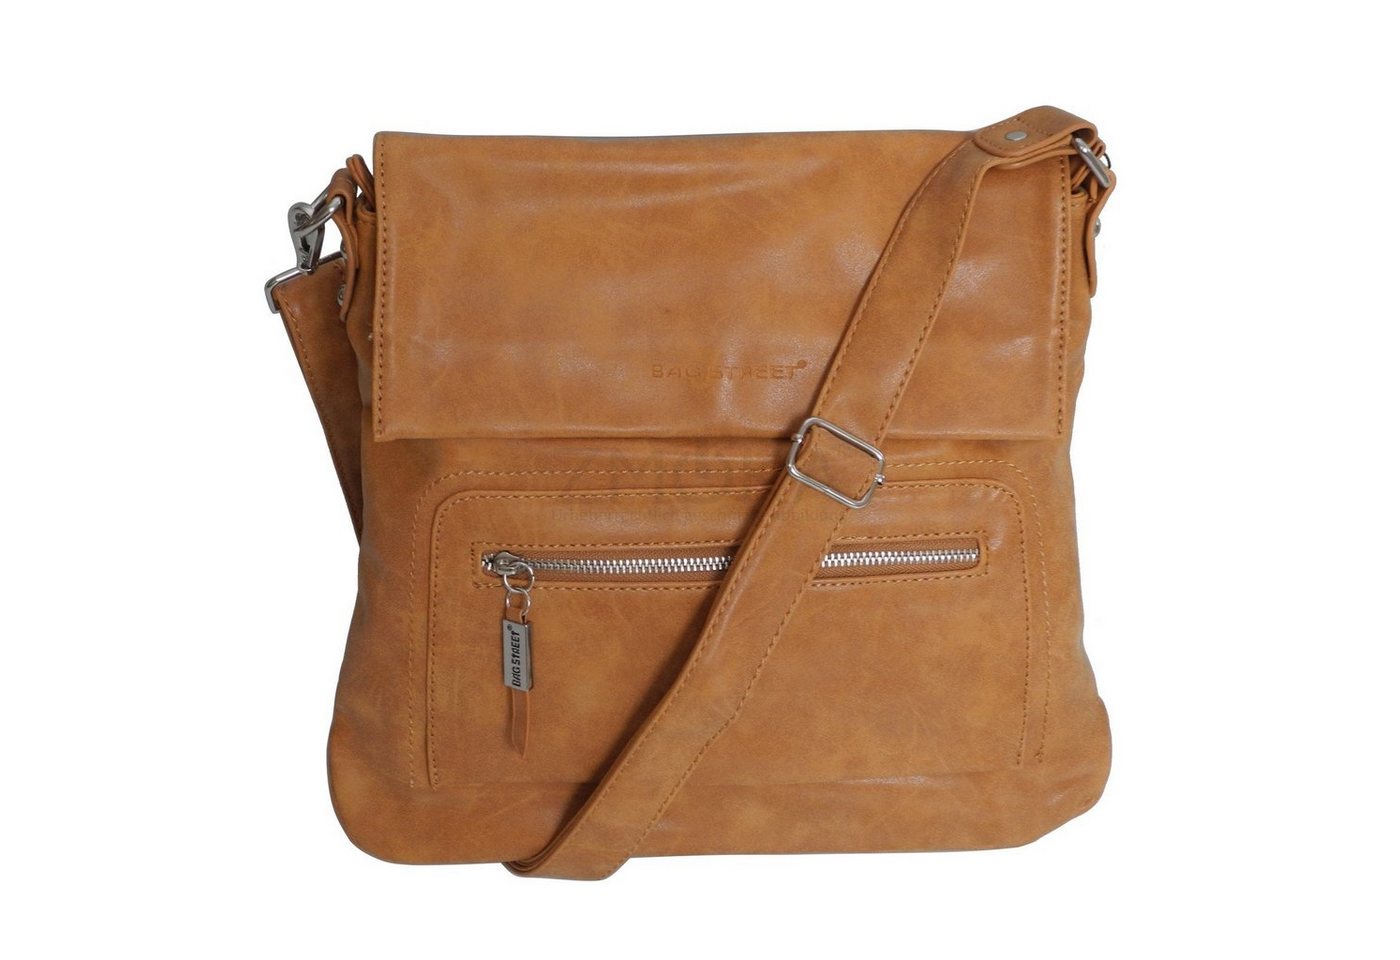 BAG STREET Handtasche Bag Street - Damen Messengerbag Damentasche Umhängetasche Auswahl von BAG STREET